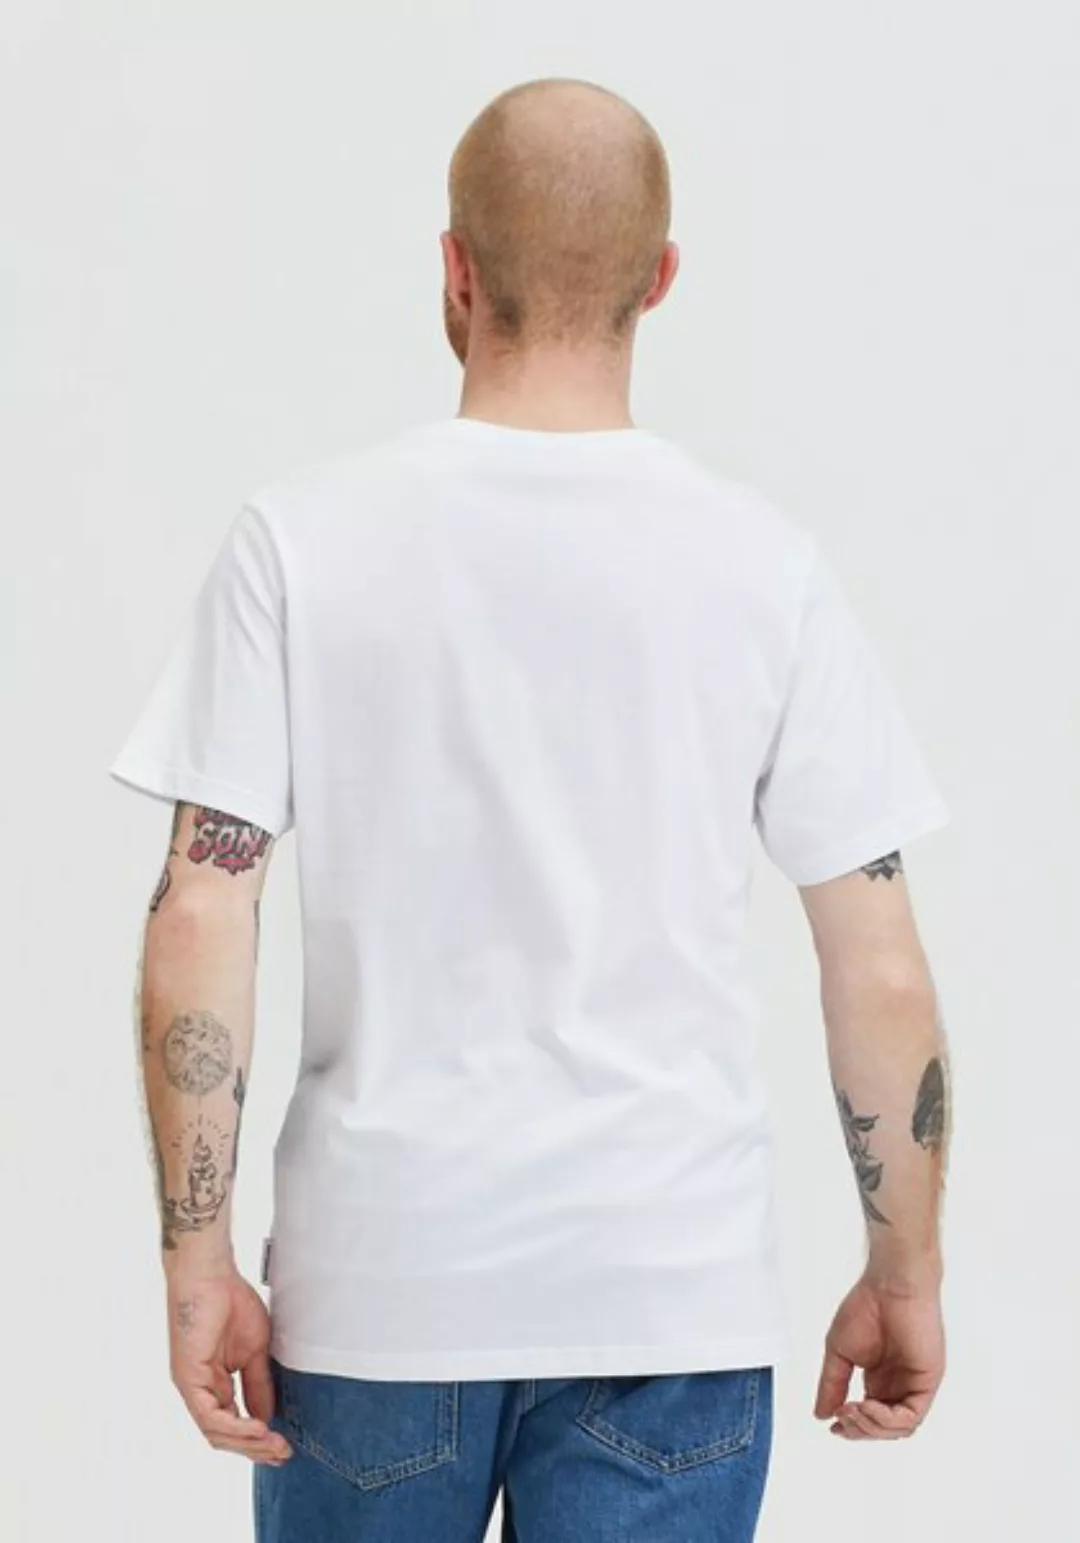 Welle Patch T-shirt günstig online kaufen